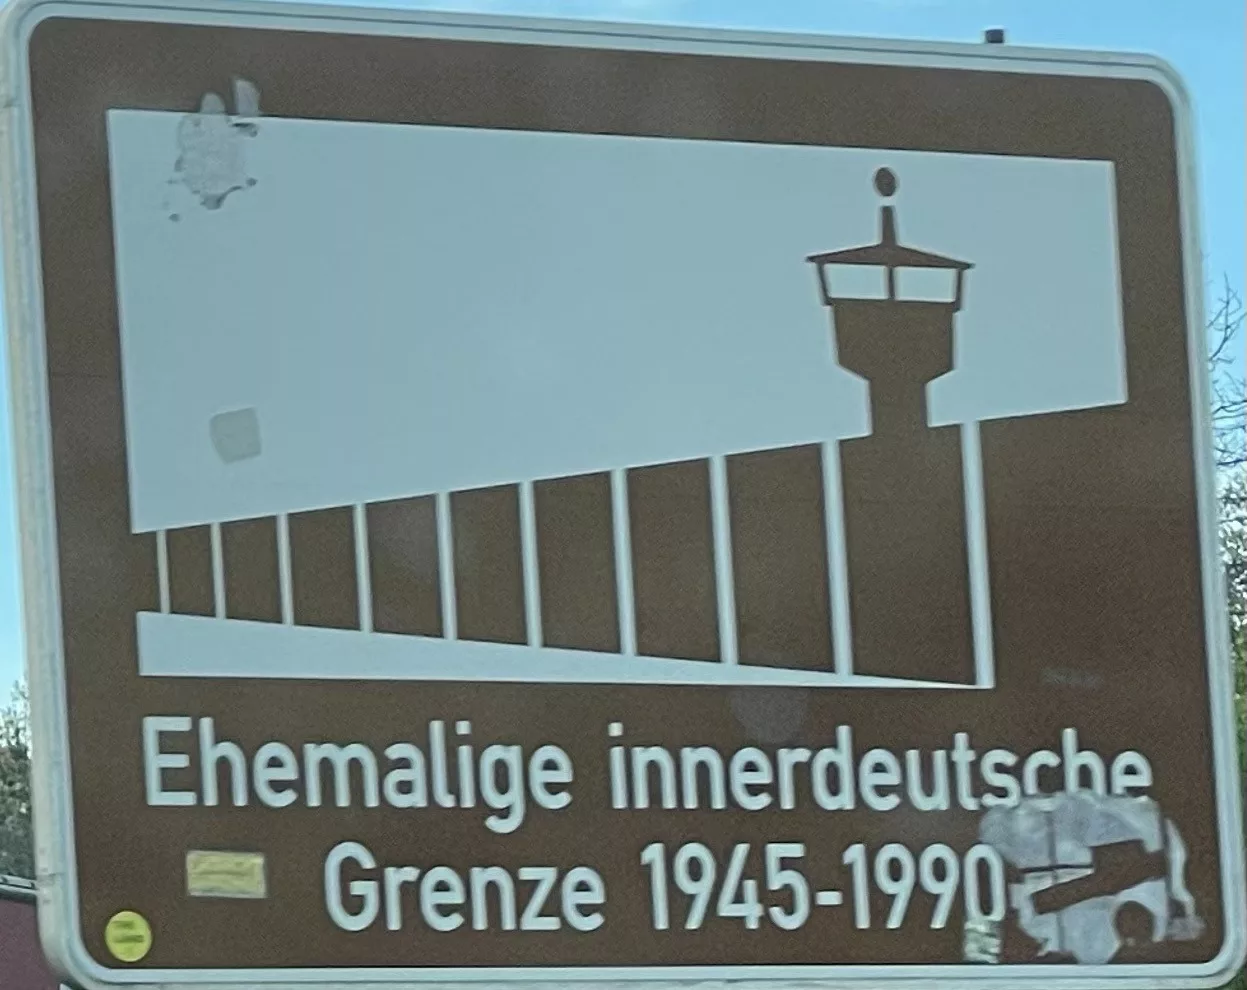 Schild bei Helmstedt/Marienbiorn zur ehemaligen inneerdeutschen Grenze.